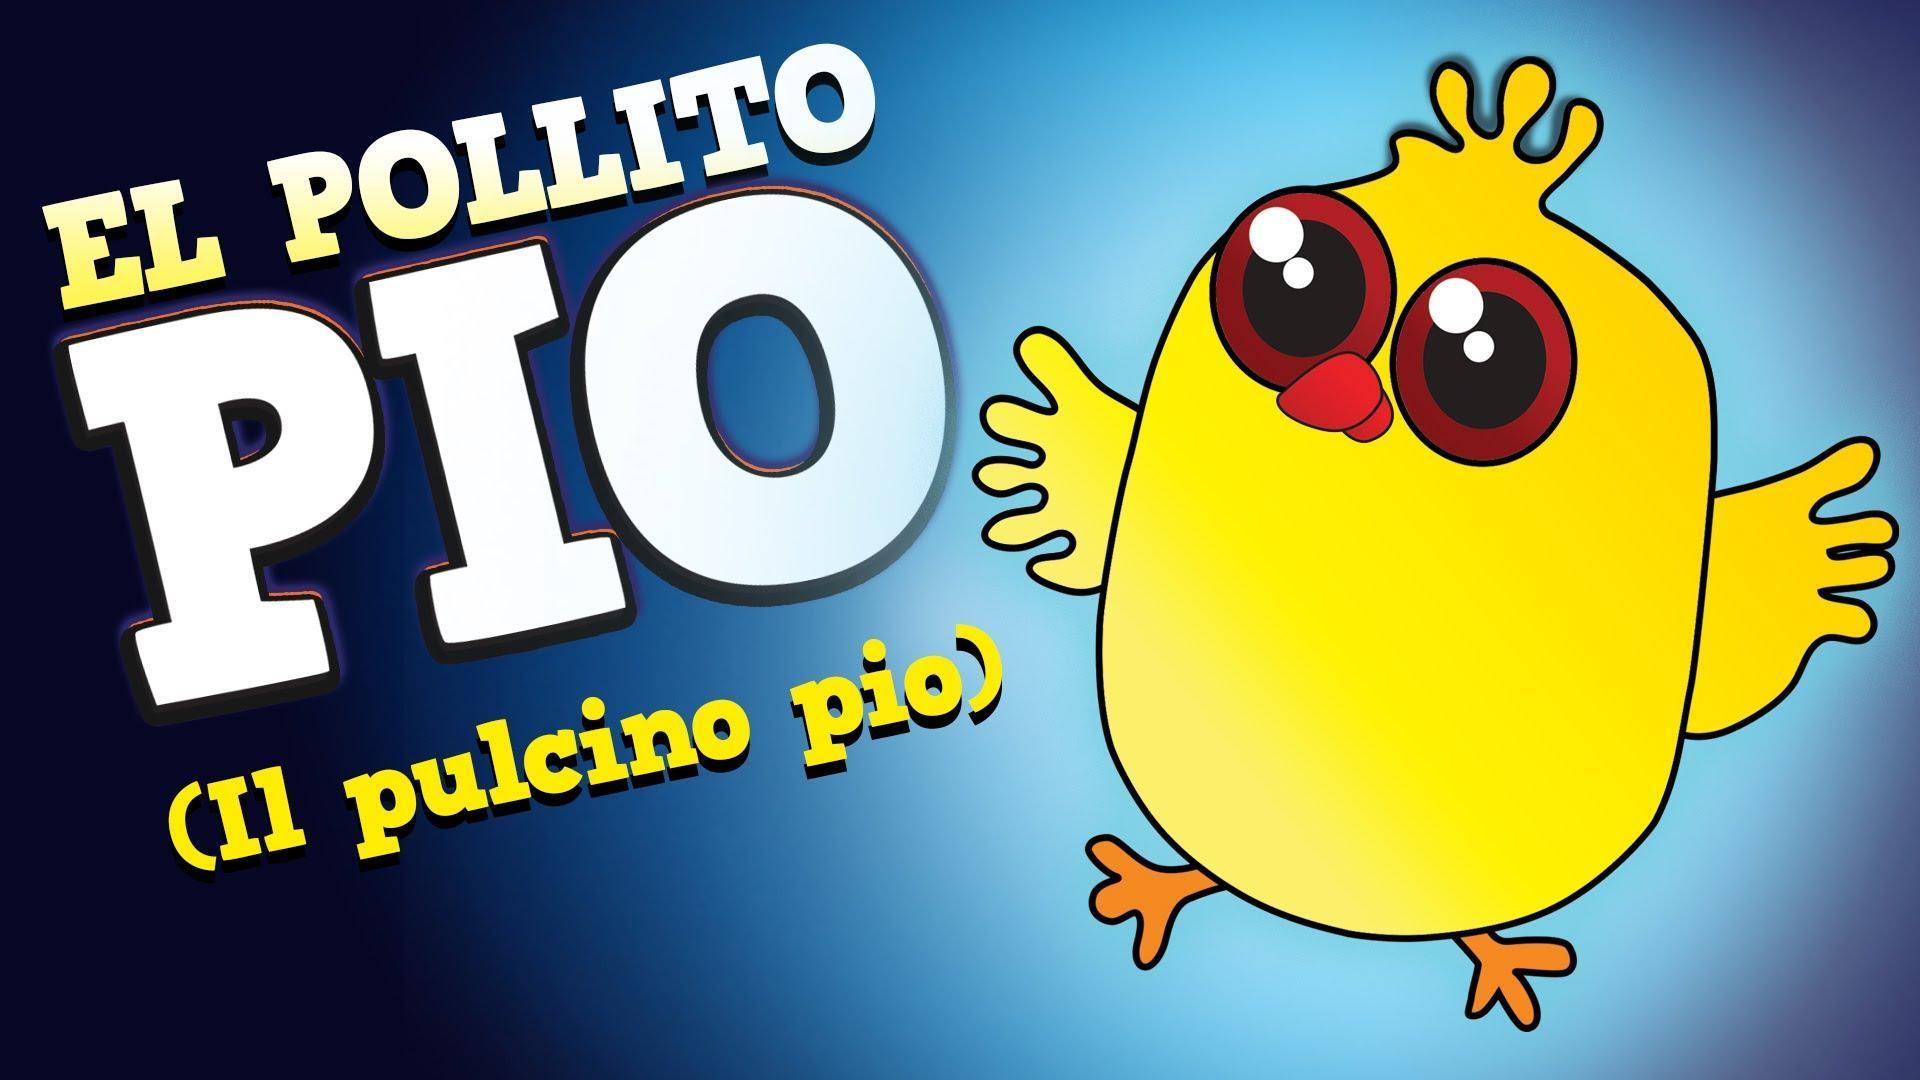 Pollito Pio-Pollitos Cantan HD capture d'écran 1.